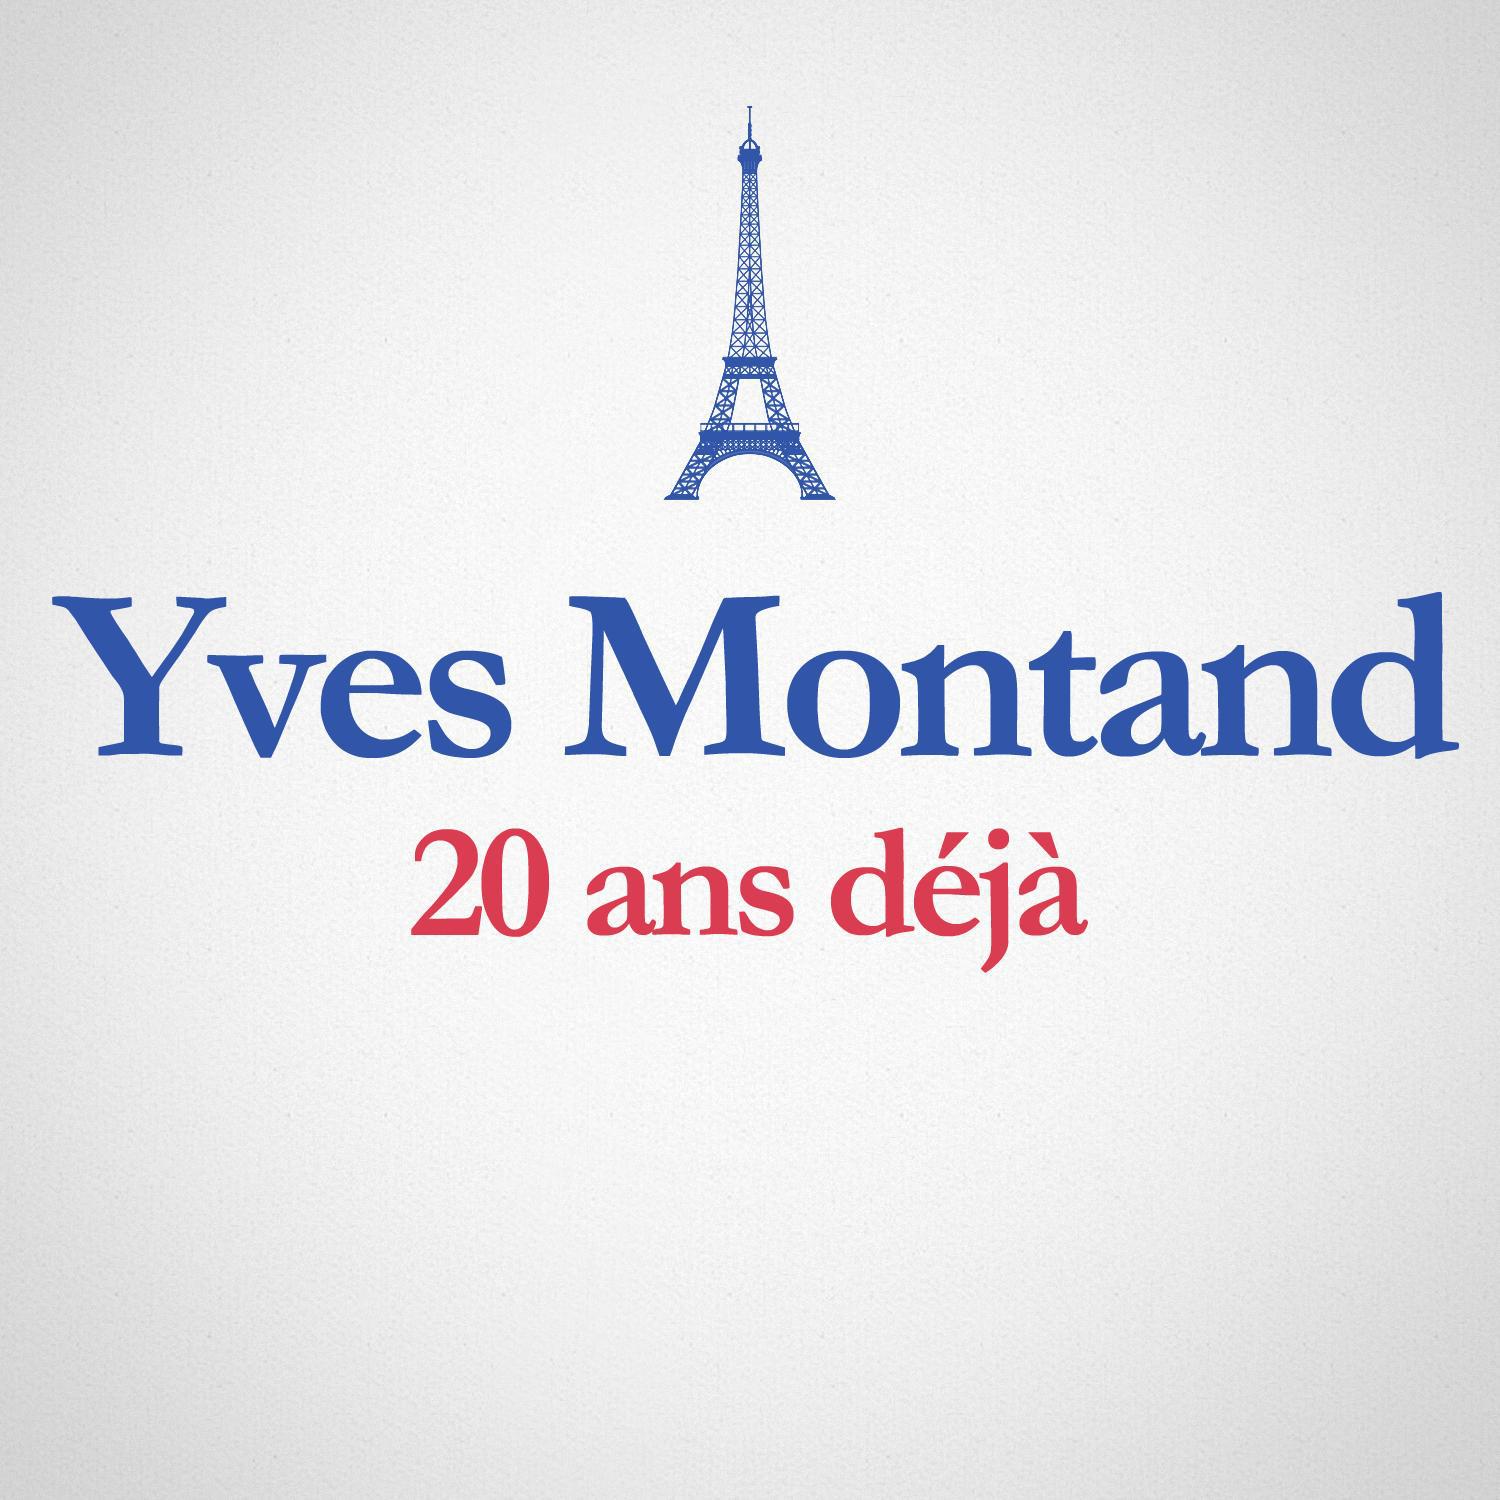 1991  2011: 20 ans de ja Album anniversaire des 20 Ans du de ce s d' Yves Montand